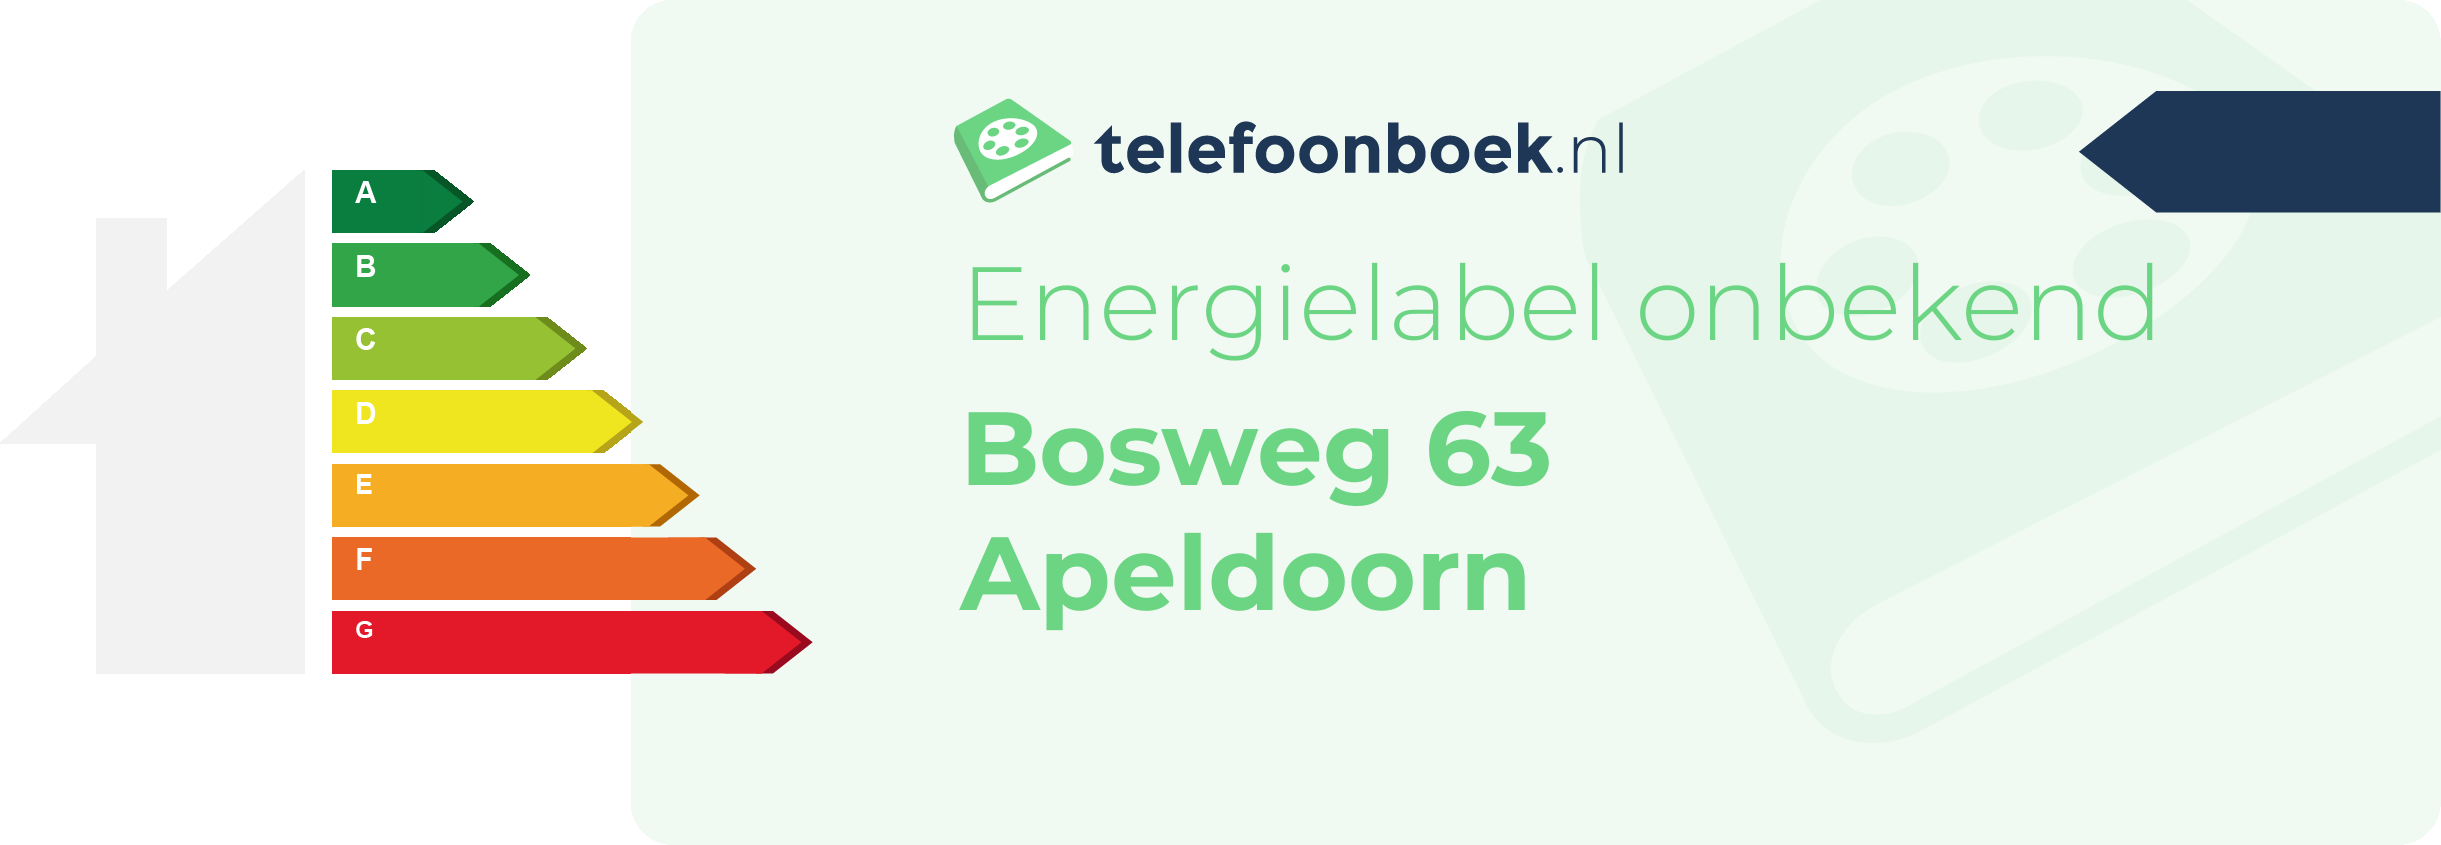 Energielabel Bosweg 63 Apeldoorn